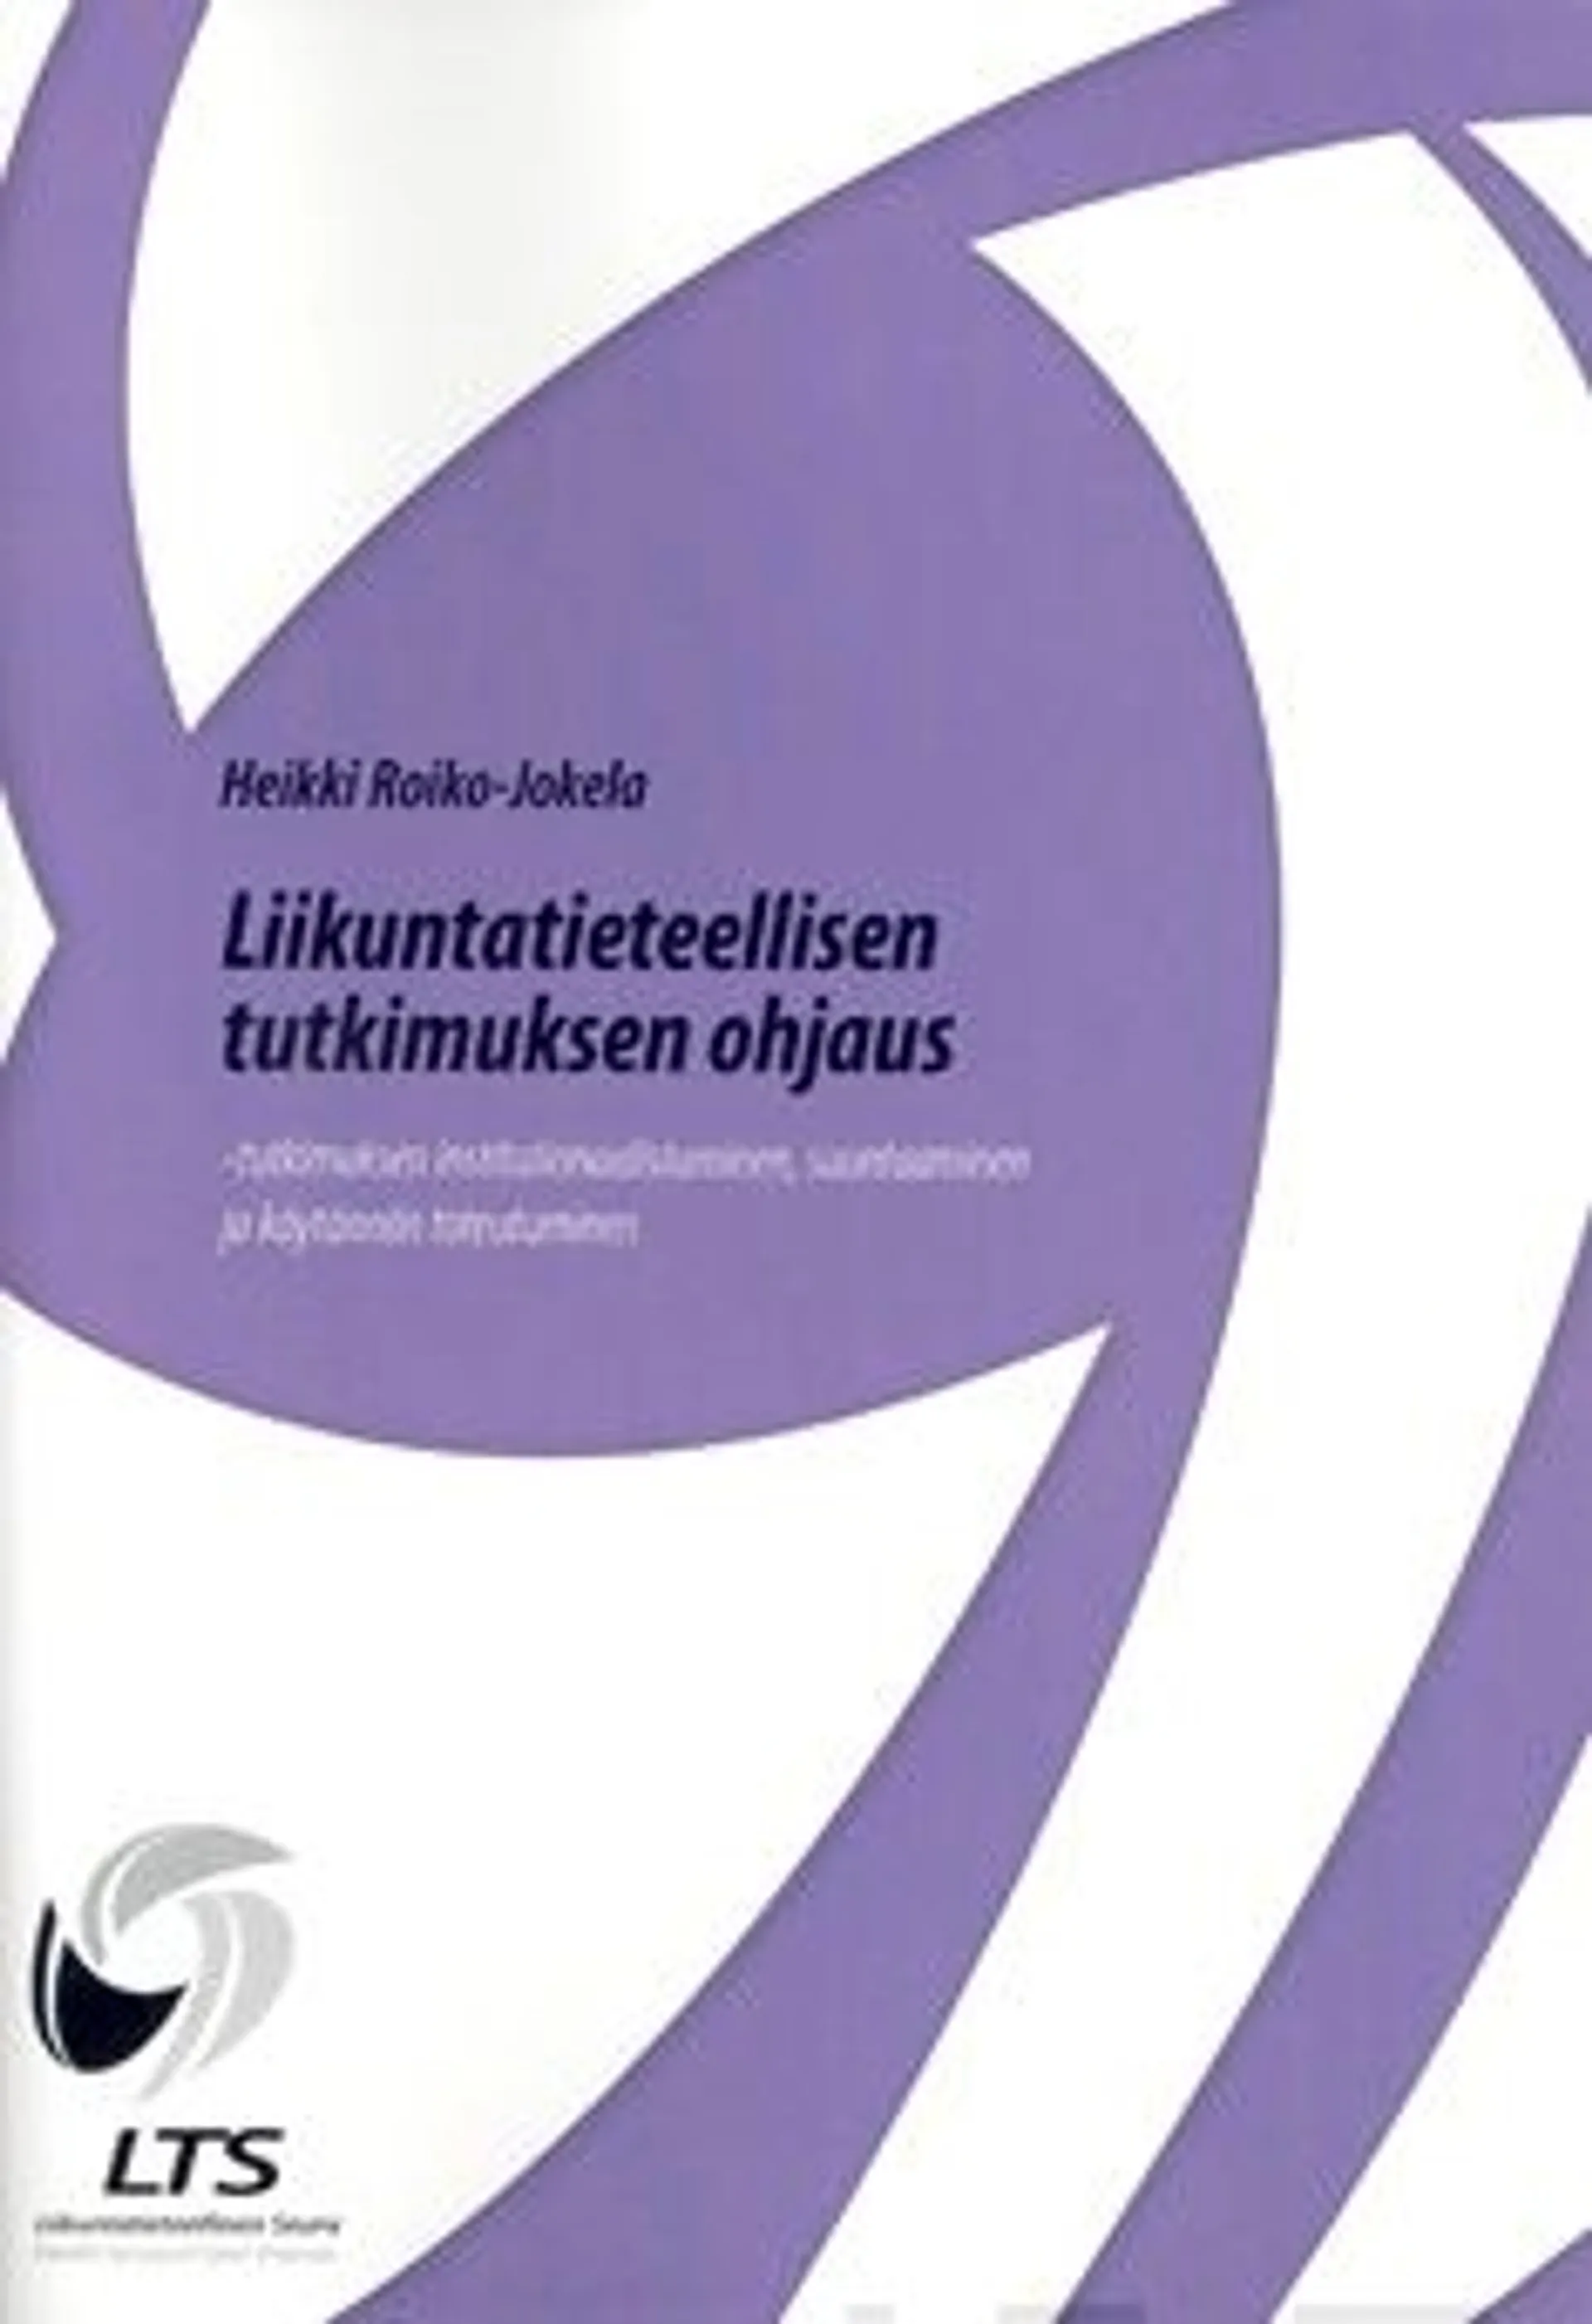 Roiko-Jokela, Liikuntatieteellisen tutkimuksen ohjaus